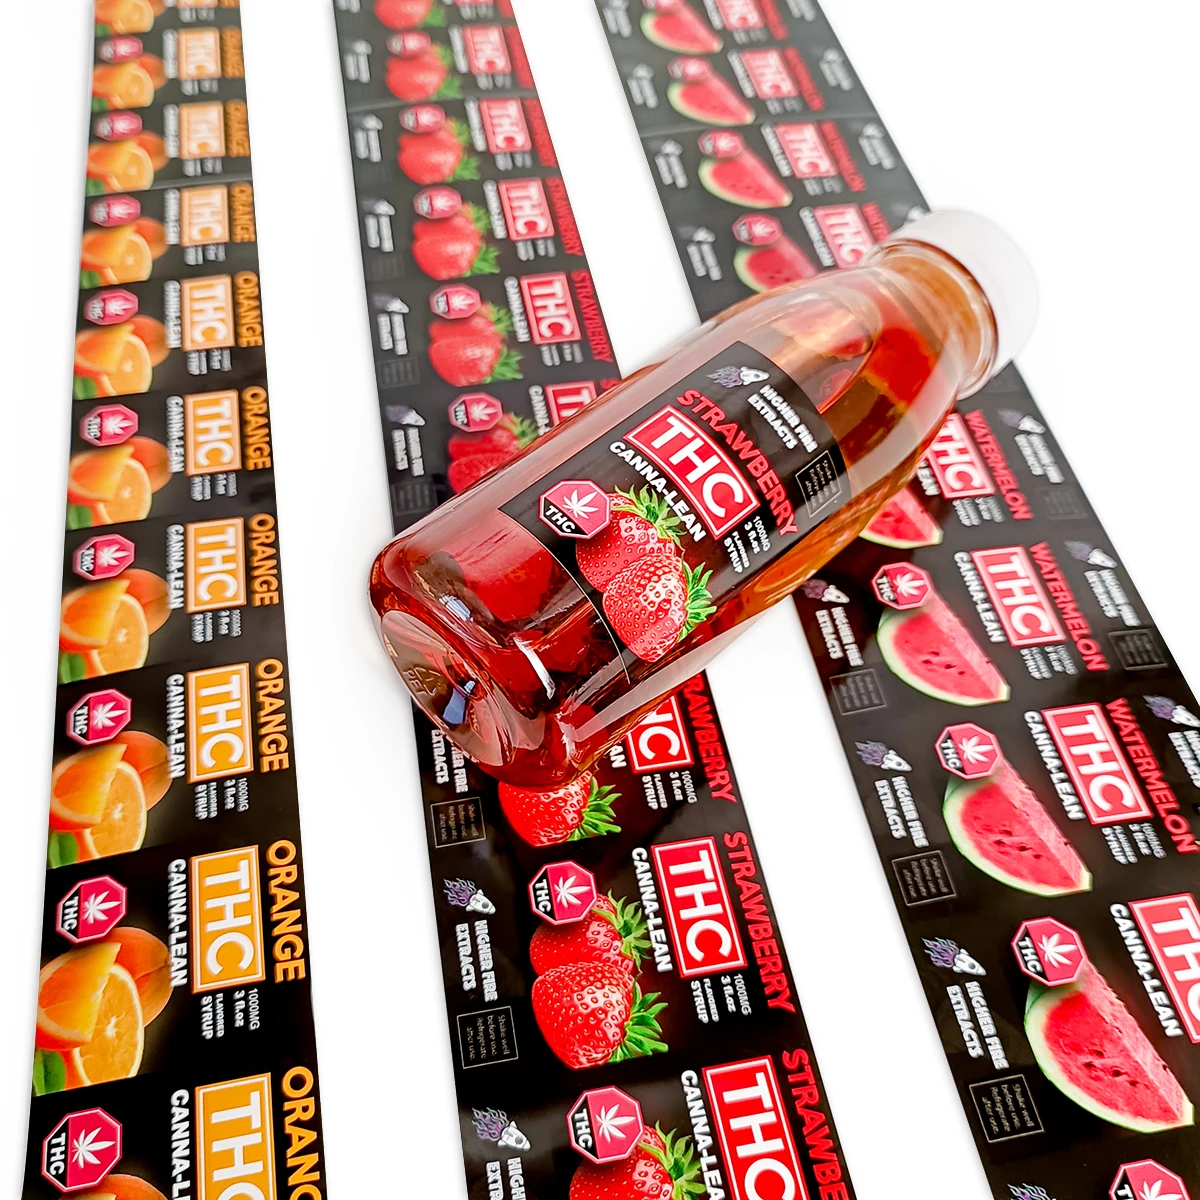 Custom Printed Vinyl Waterproof Adhesive Juice Bottle Beverage Packaging Sticker Labels,Water Glossy Package Labels